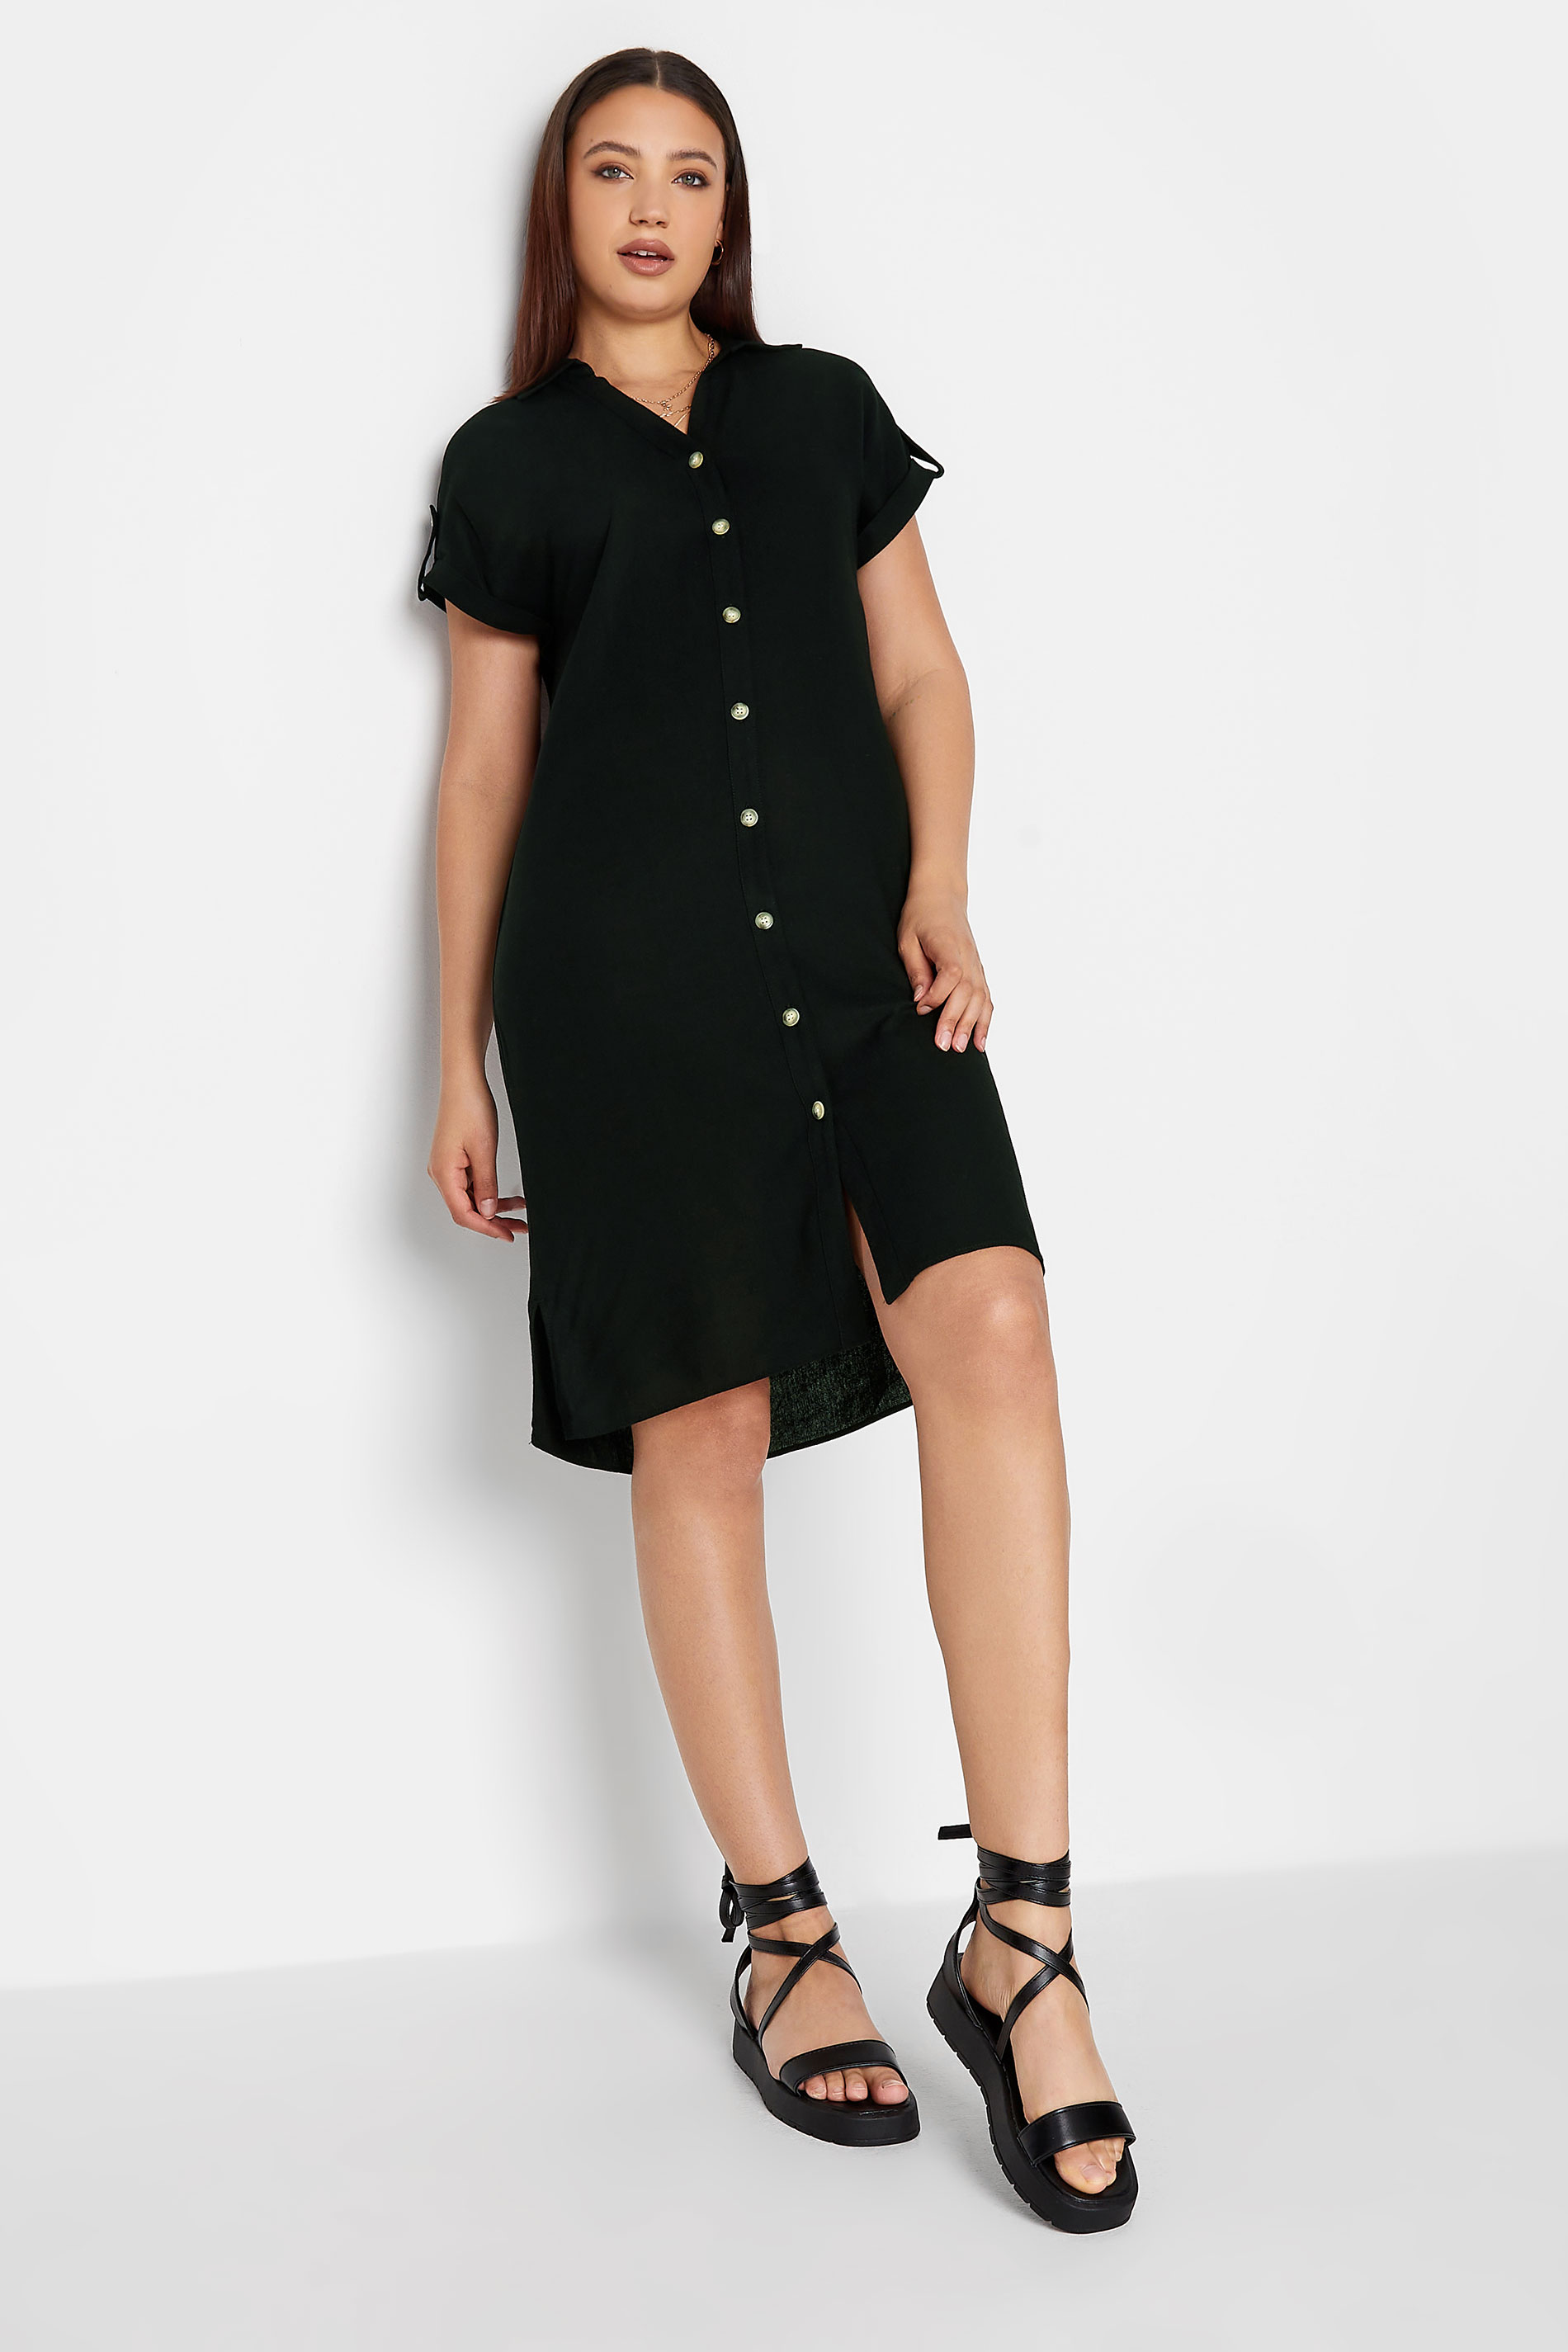 LTS Tall Women's Black Linen Look Button Through Shirt Dress | Long Tall Sally  2